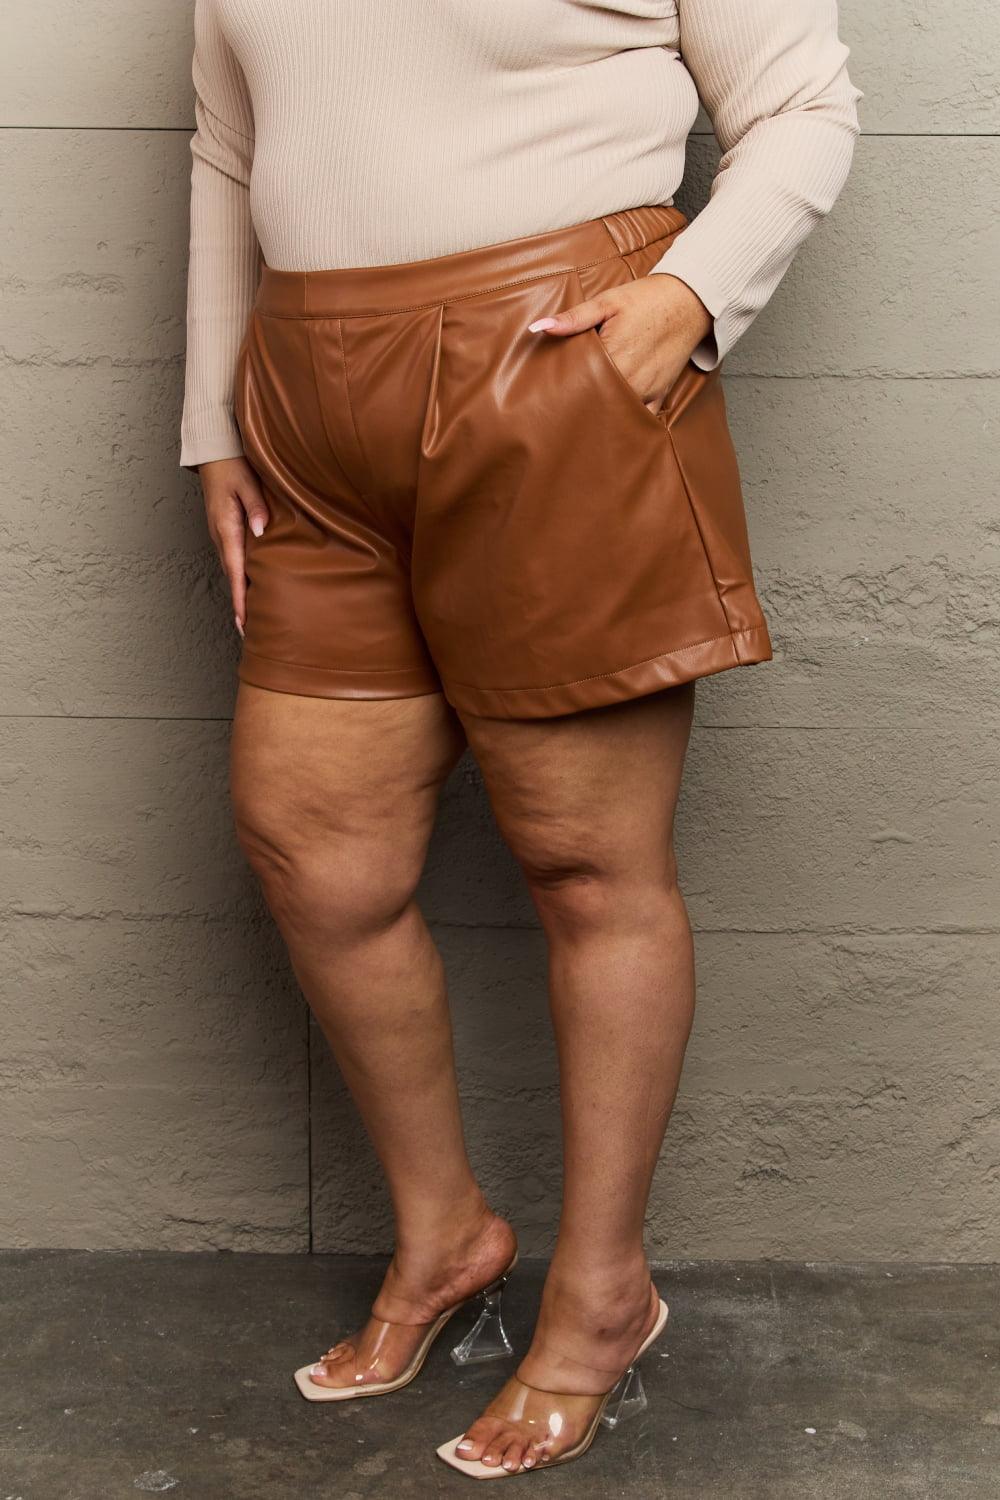 Sustainable Fashion Vegan Plus Size Leather Shorts - MXSTUDIO.COM